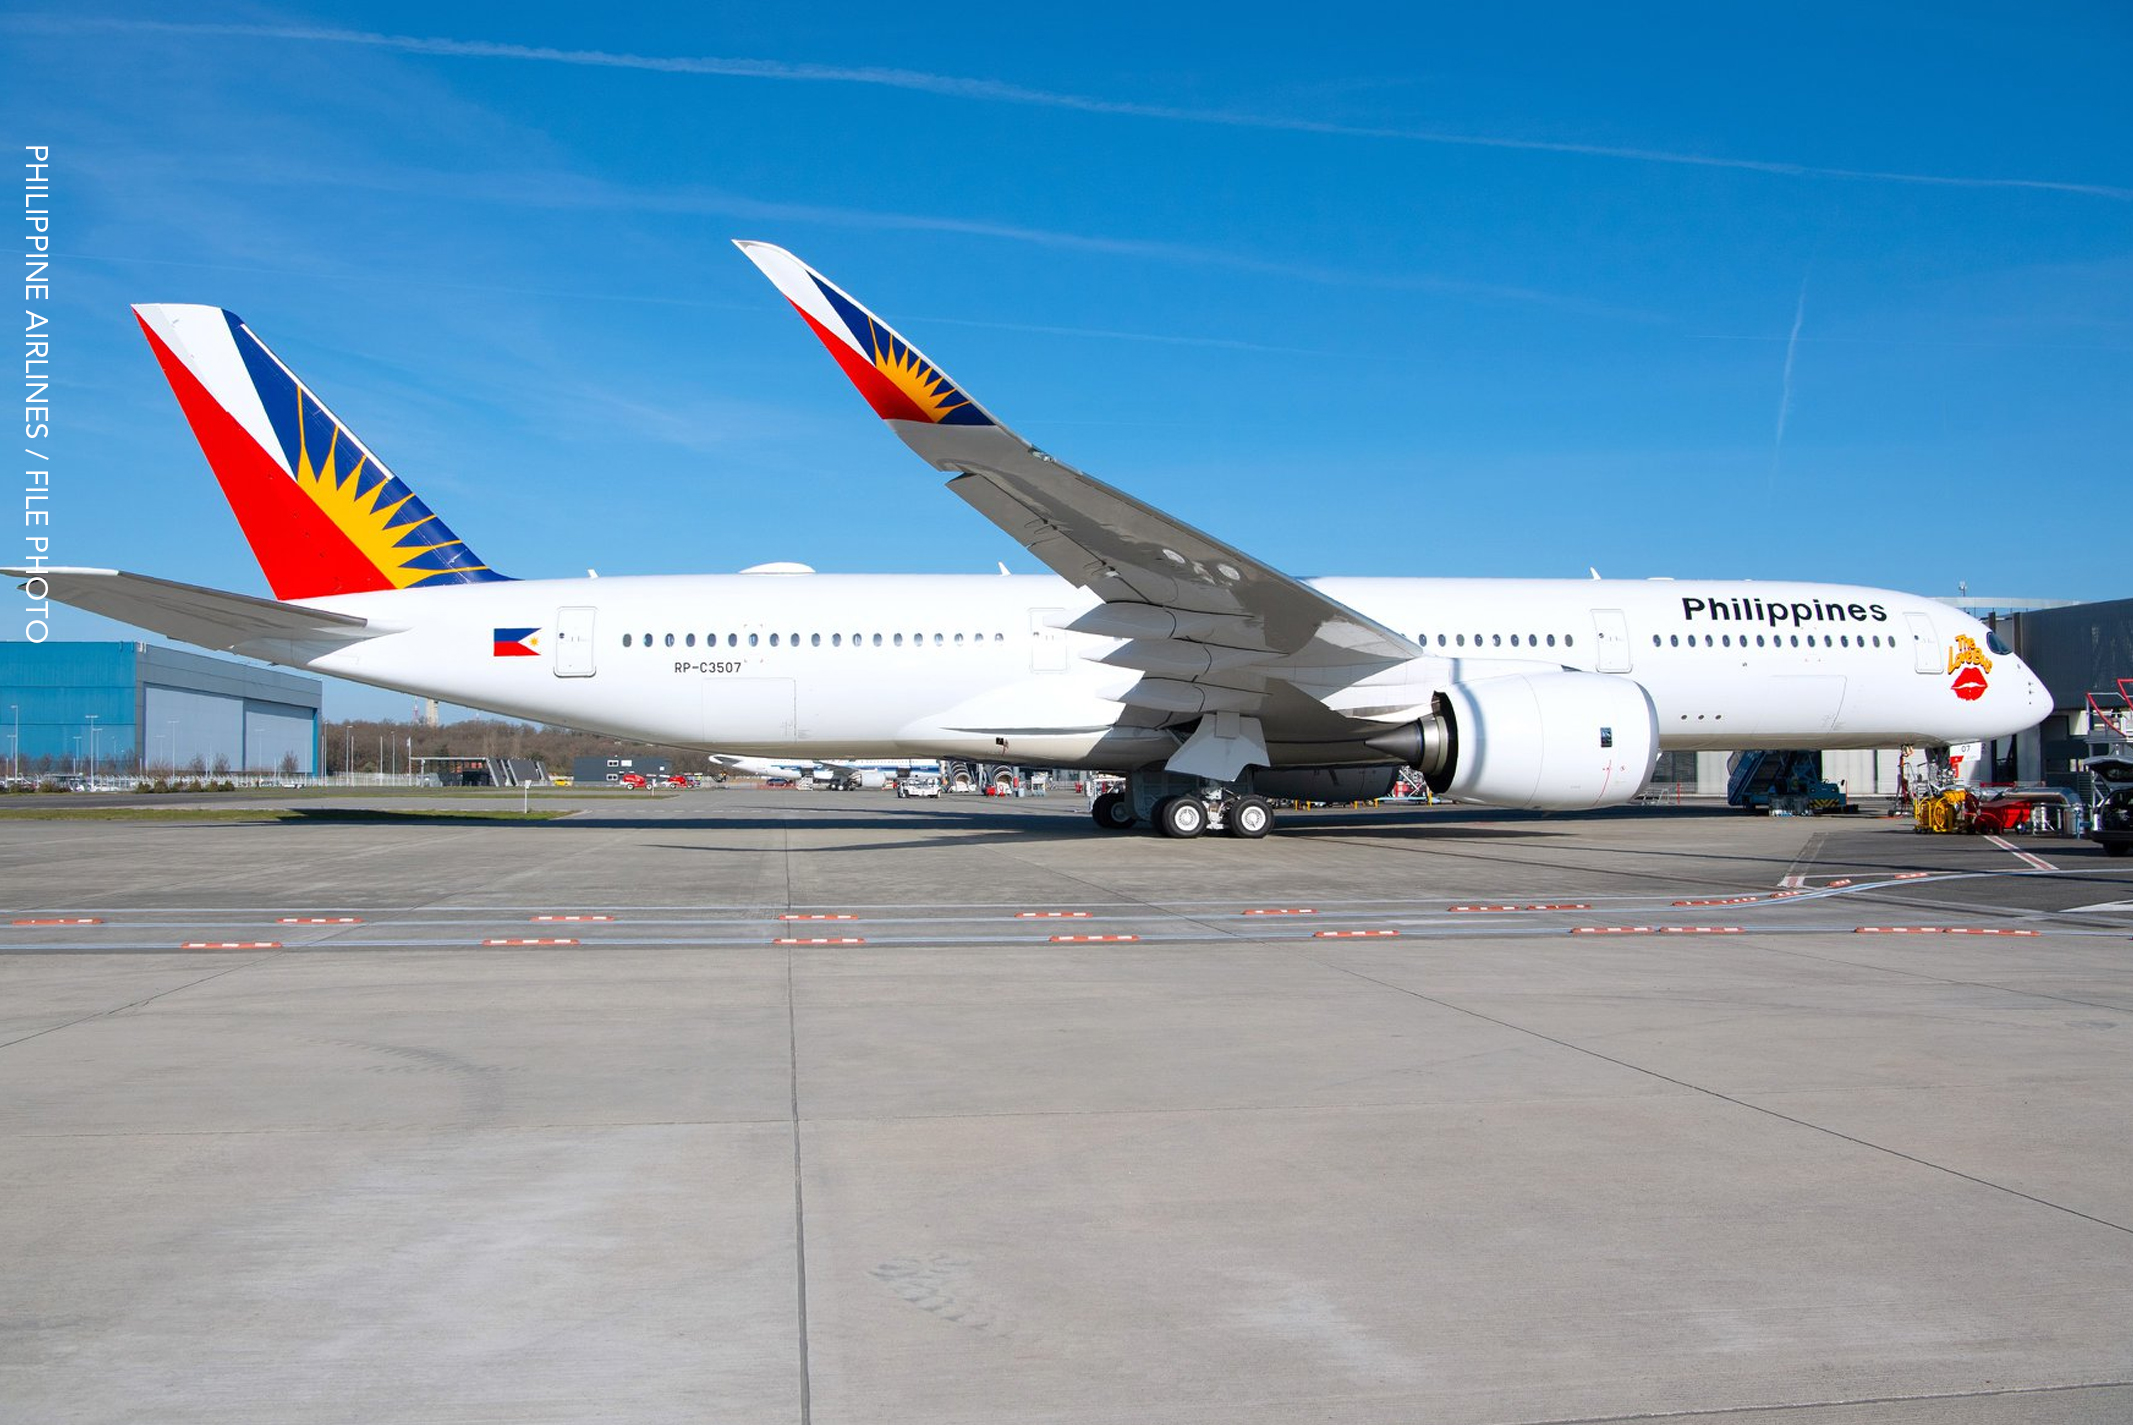 Airlines 2021 philippine flight schedule Philippine Airlines